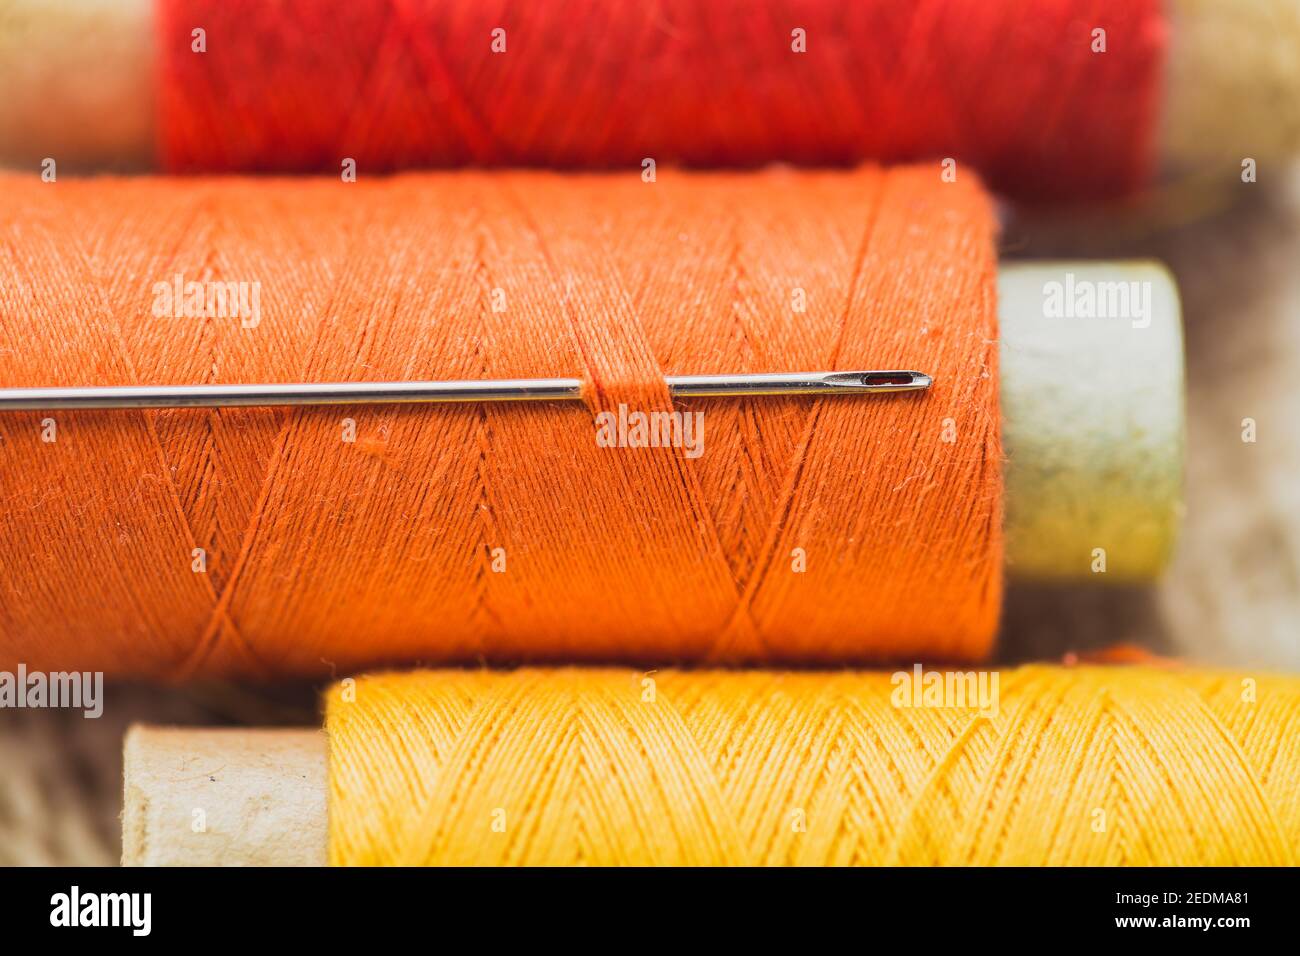 Aiguille à coudre dans une bobine de fil en orange - adapter le matériau et les outils Banque D'Images